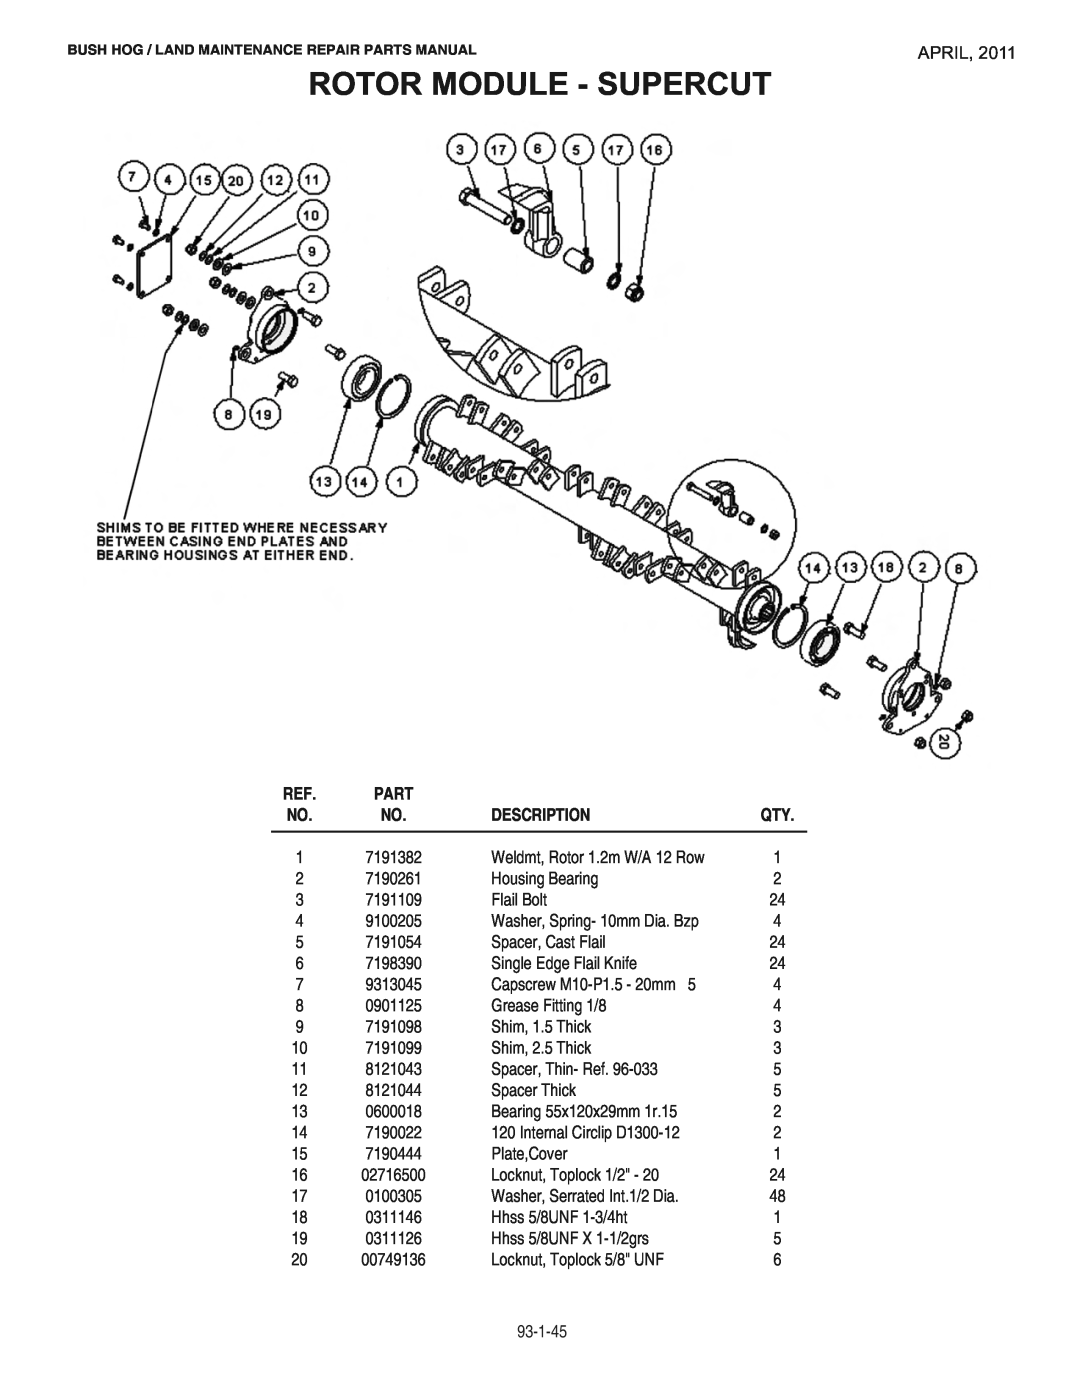 Bush Hog RMB1865E manual Rotor Module - Supercut, April, Description 